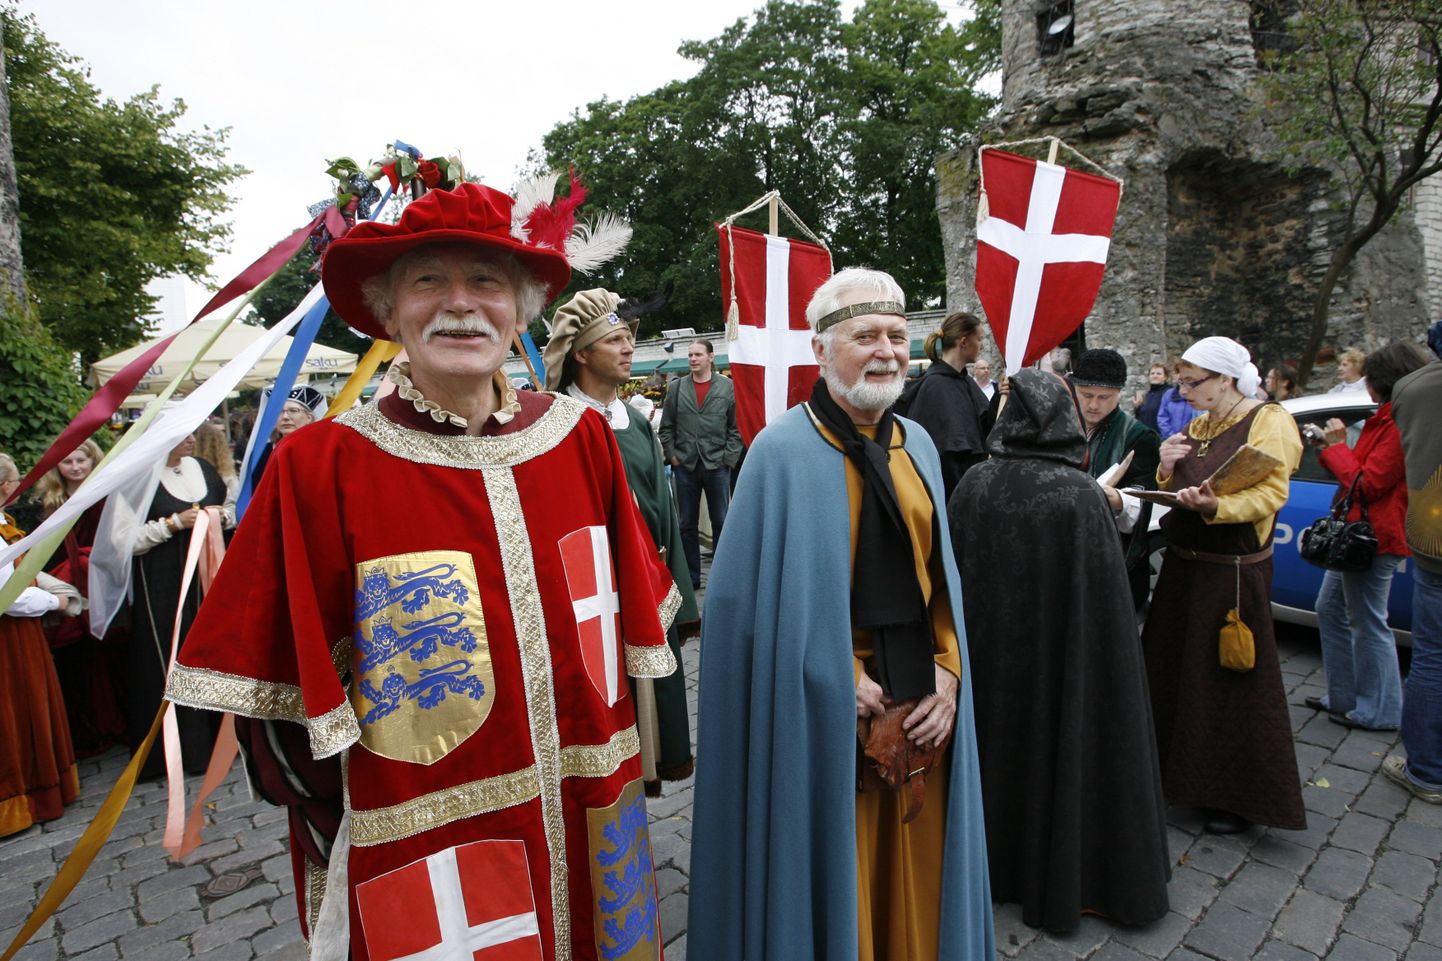 Дни средневековья в Таллинне в 2009 году. Праздничная процессия в Старом городе